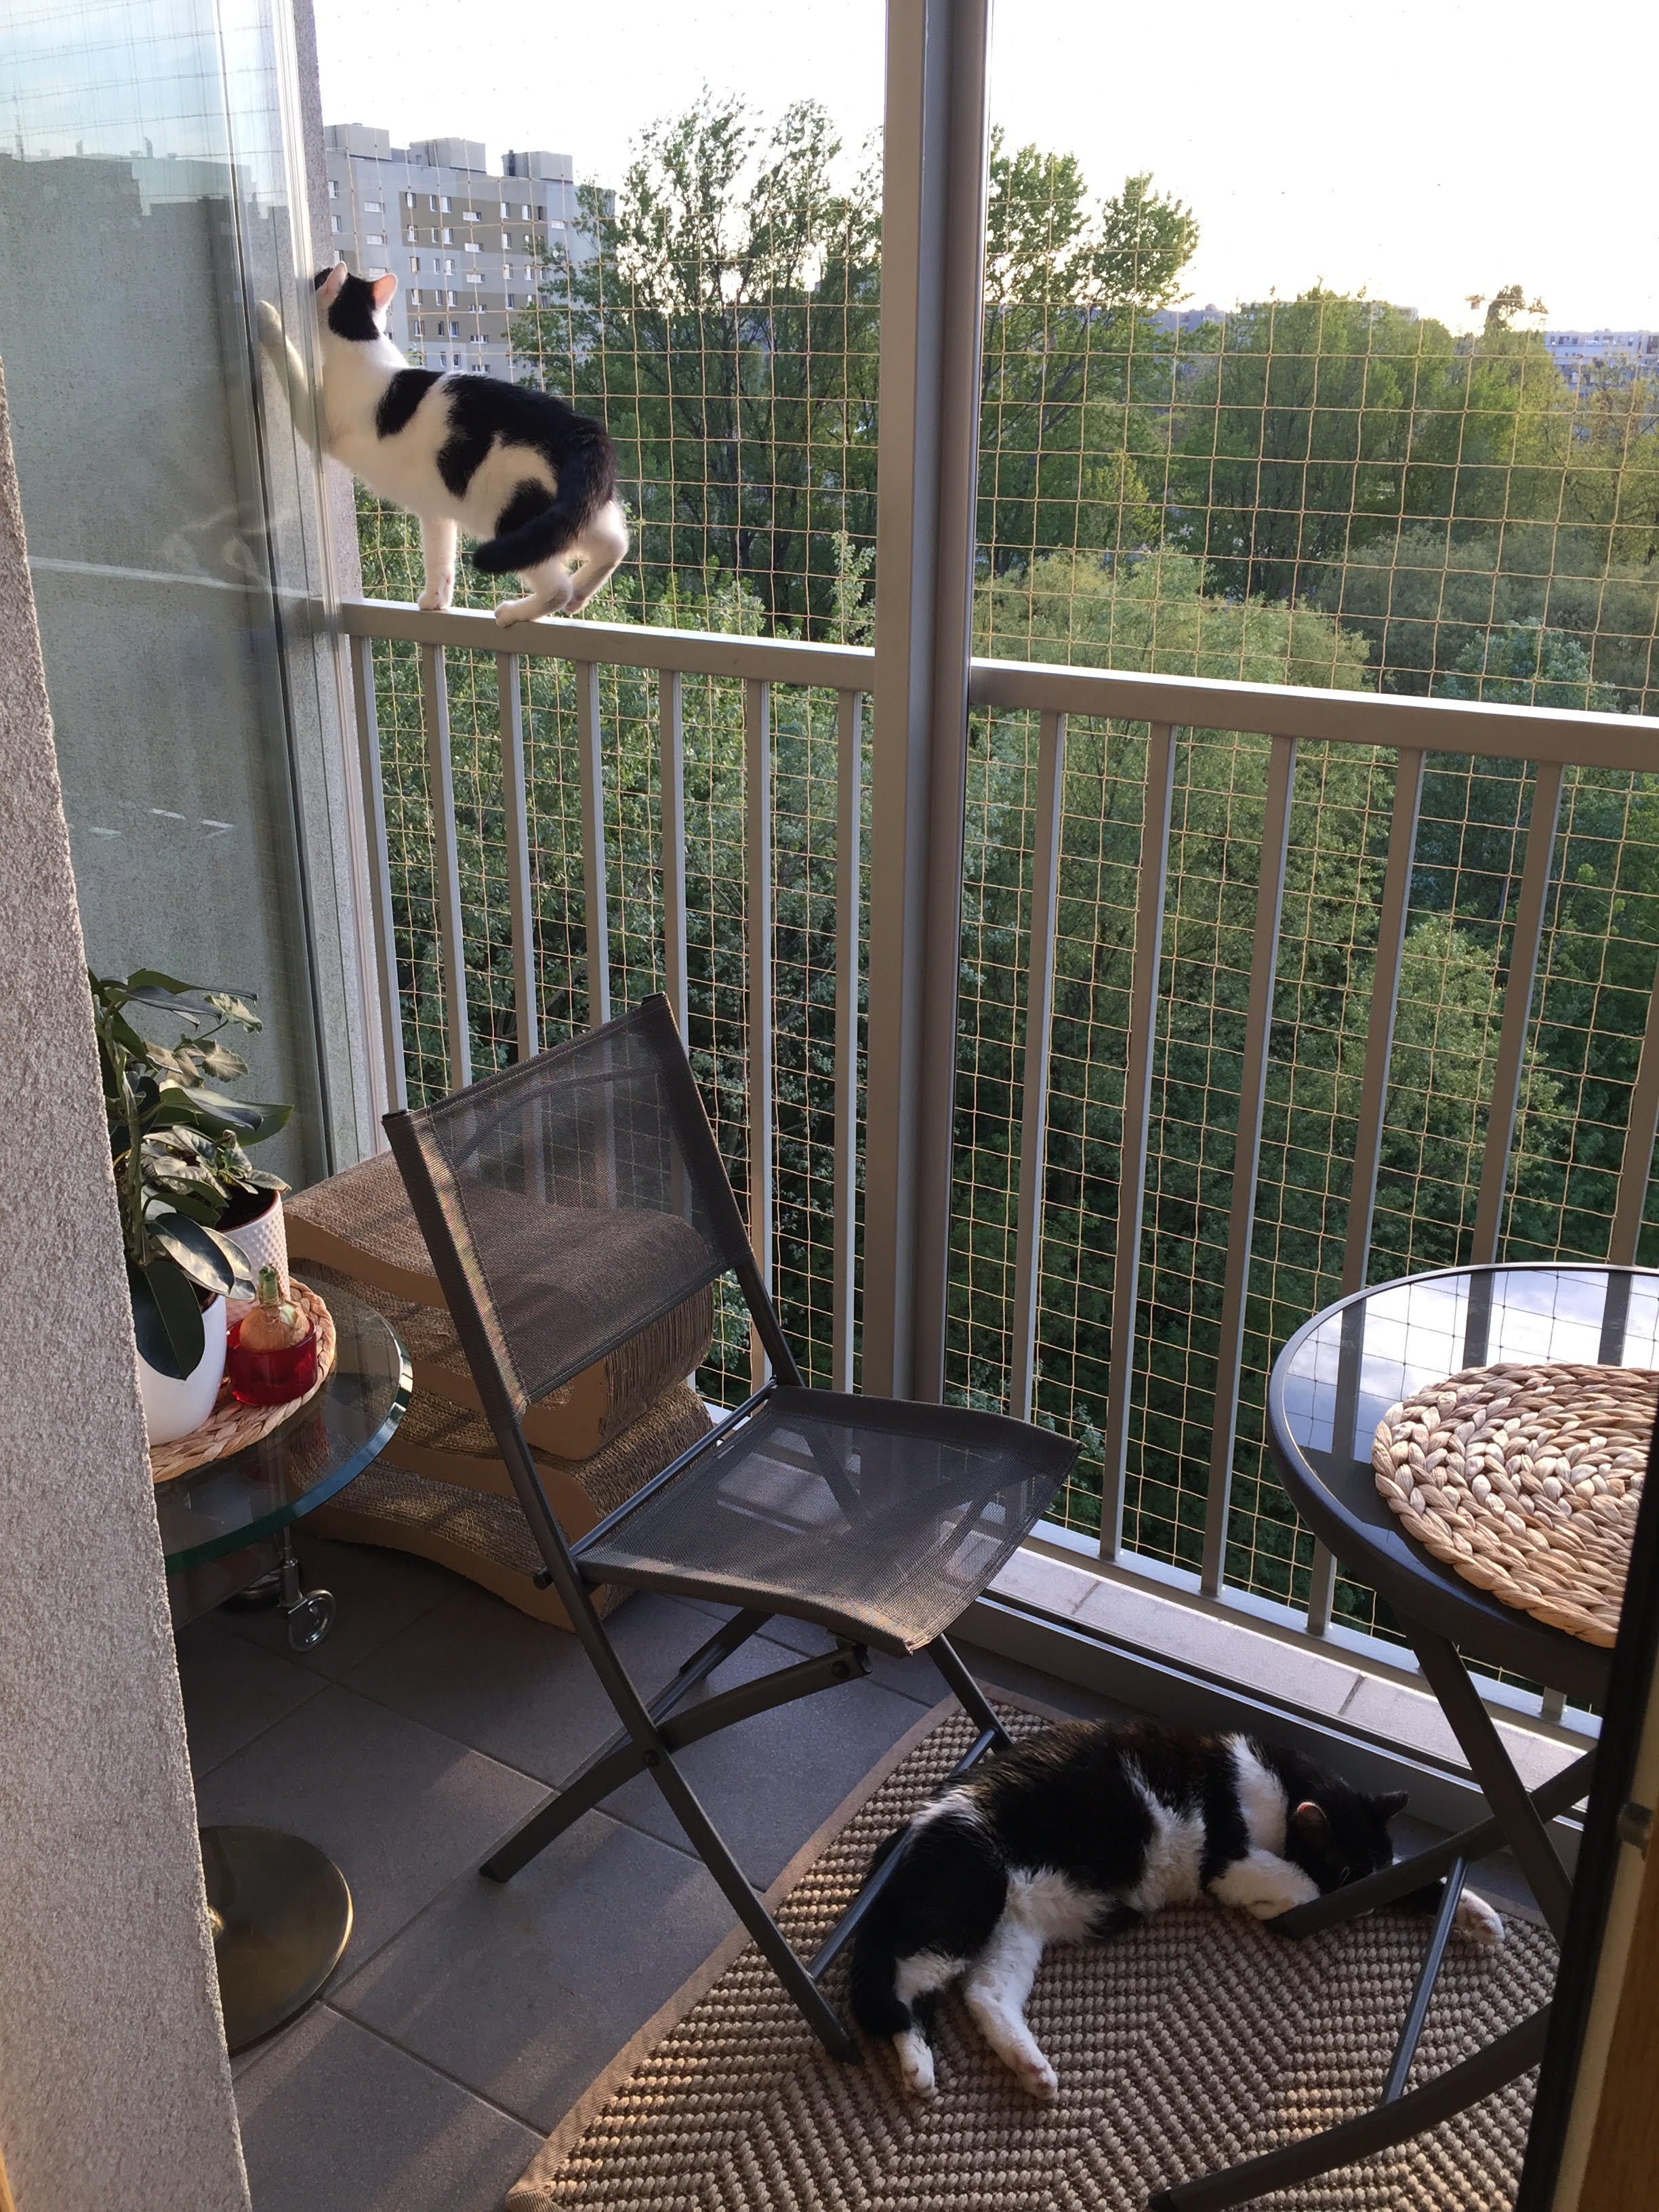 Zestaw 6x2m bez wiercenia z siatka na balkon dla kota. Kocia siatka balkonowa oczko 50x50mm. 